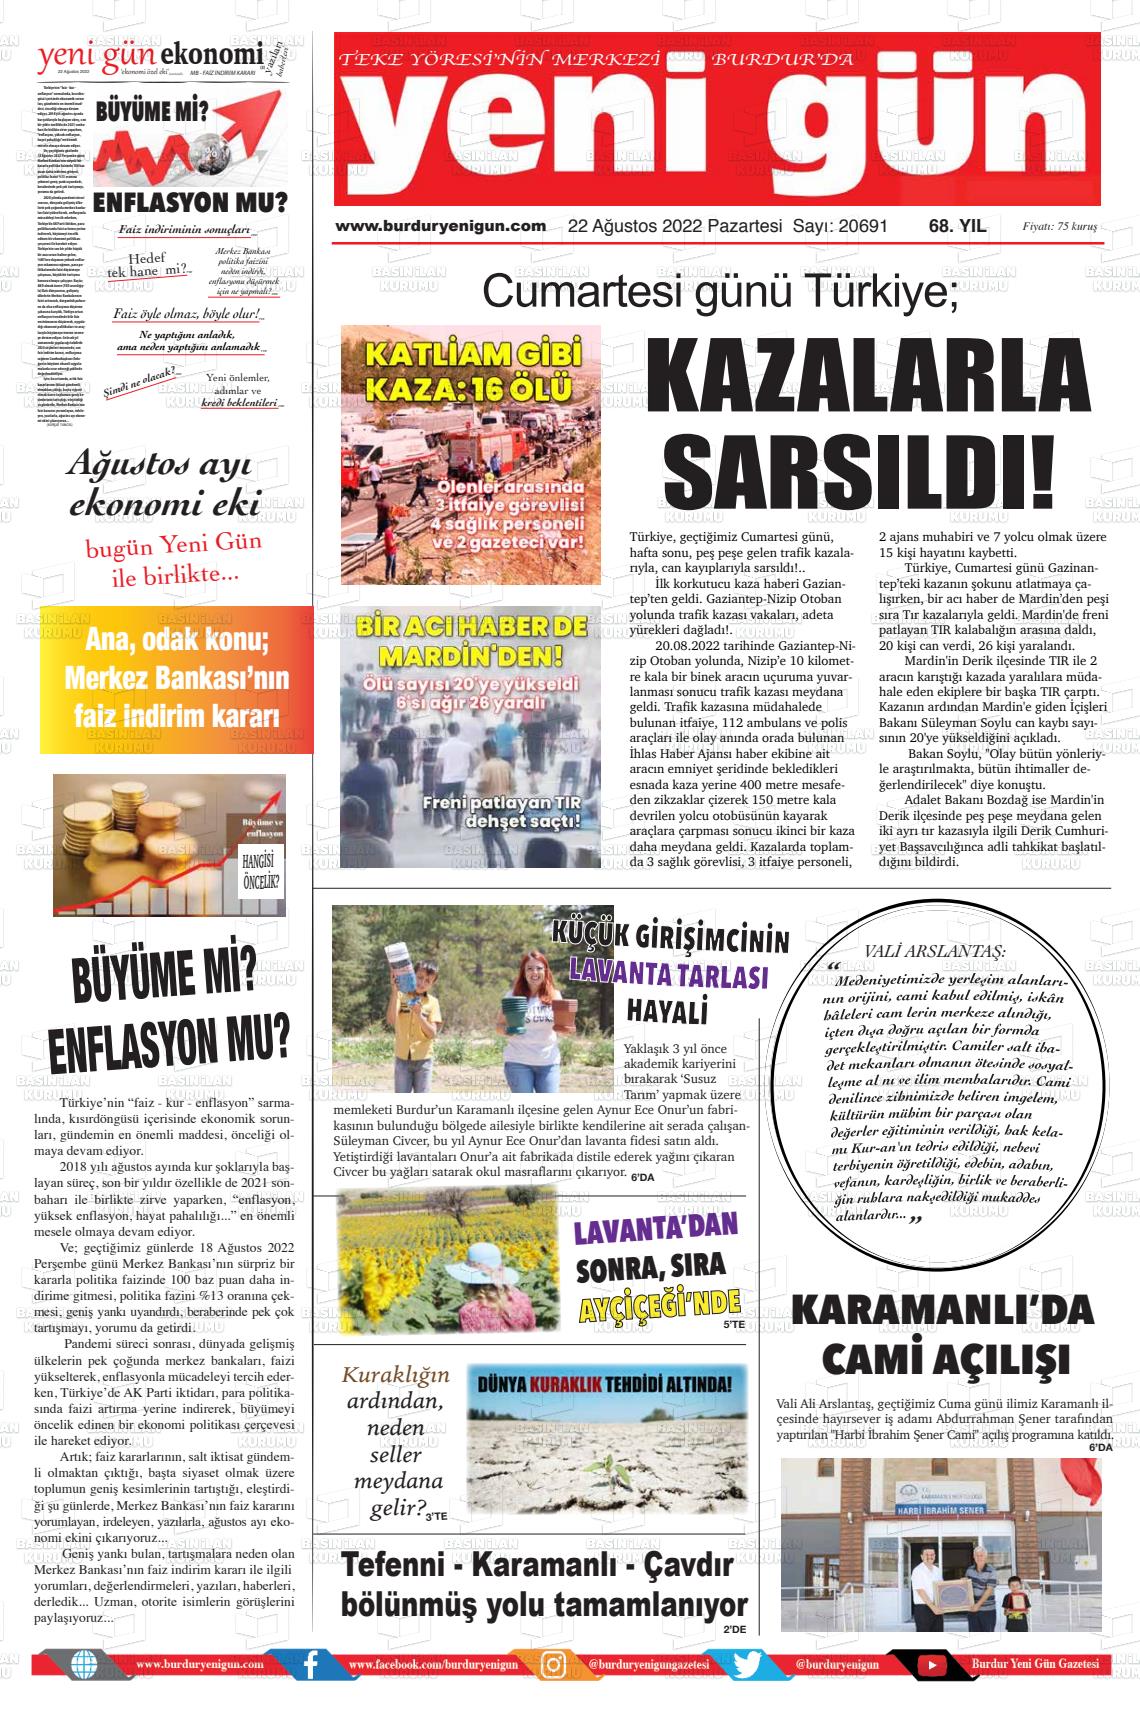 22 Ağustos 2022 Burdur Yeni Gün Gazete Manşeti